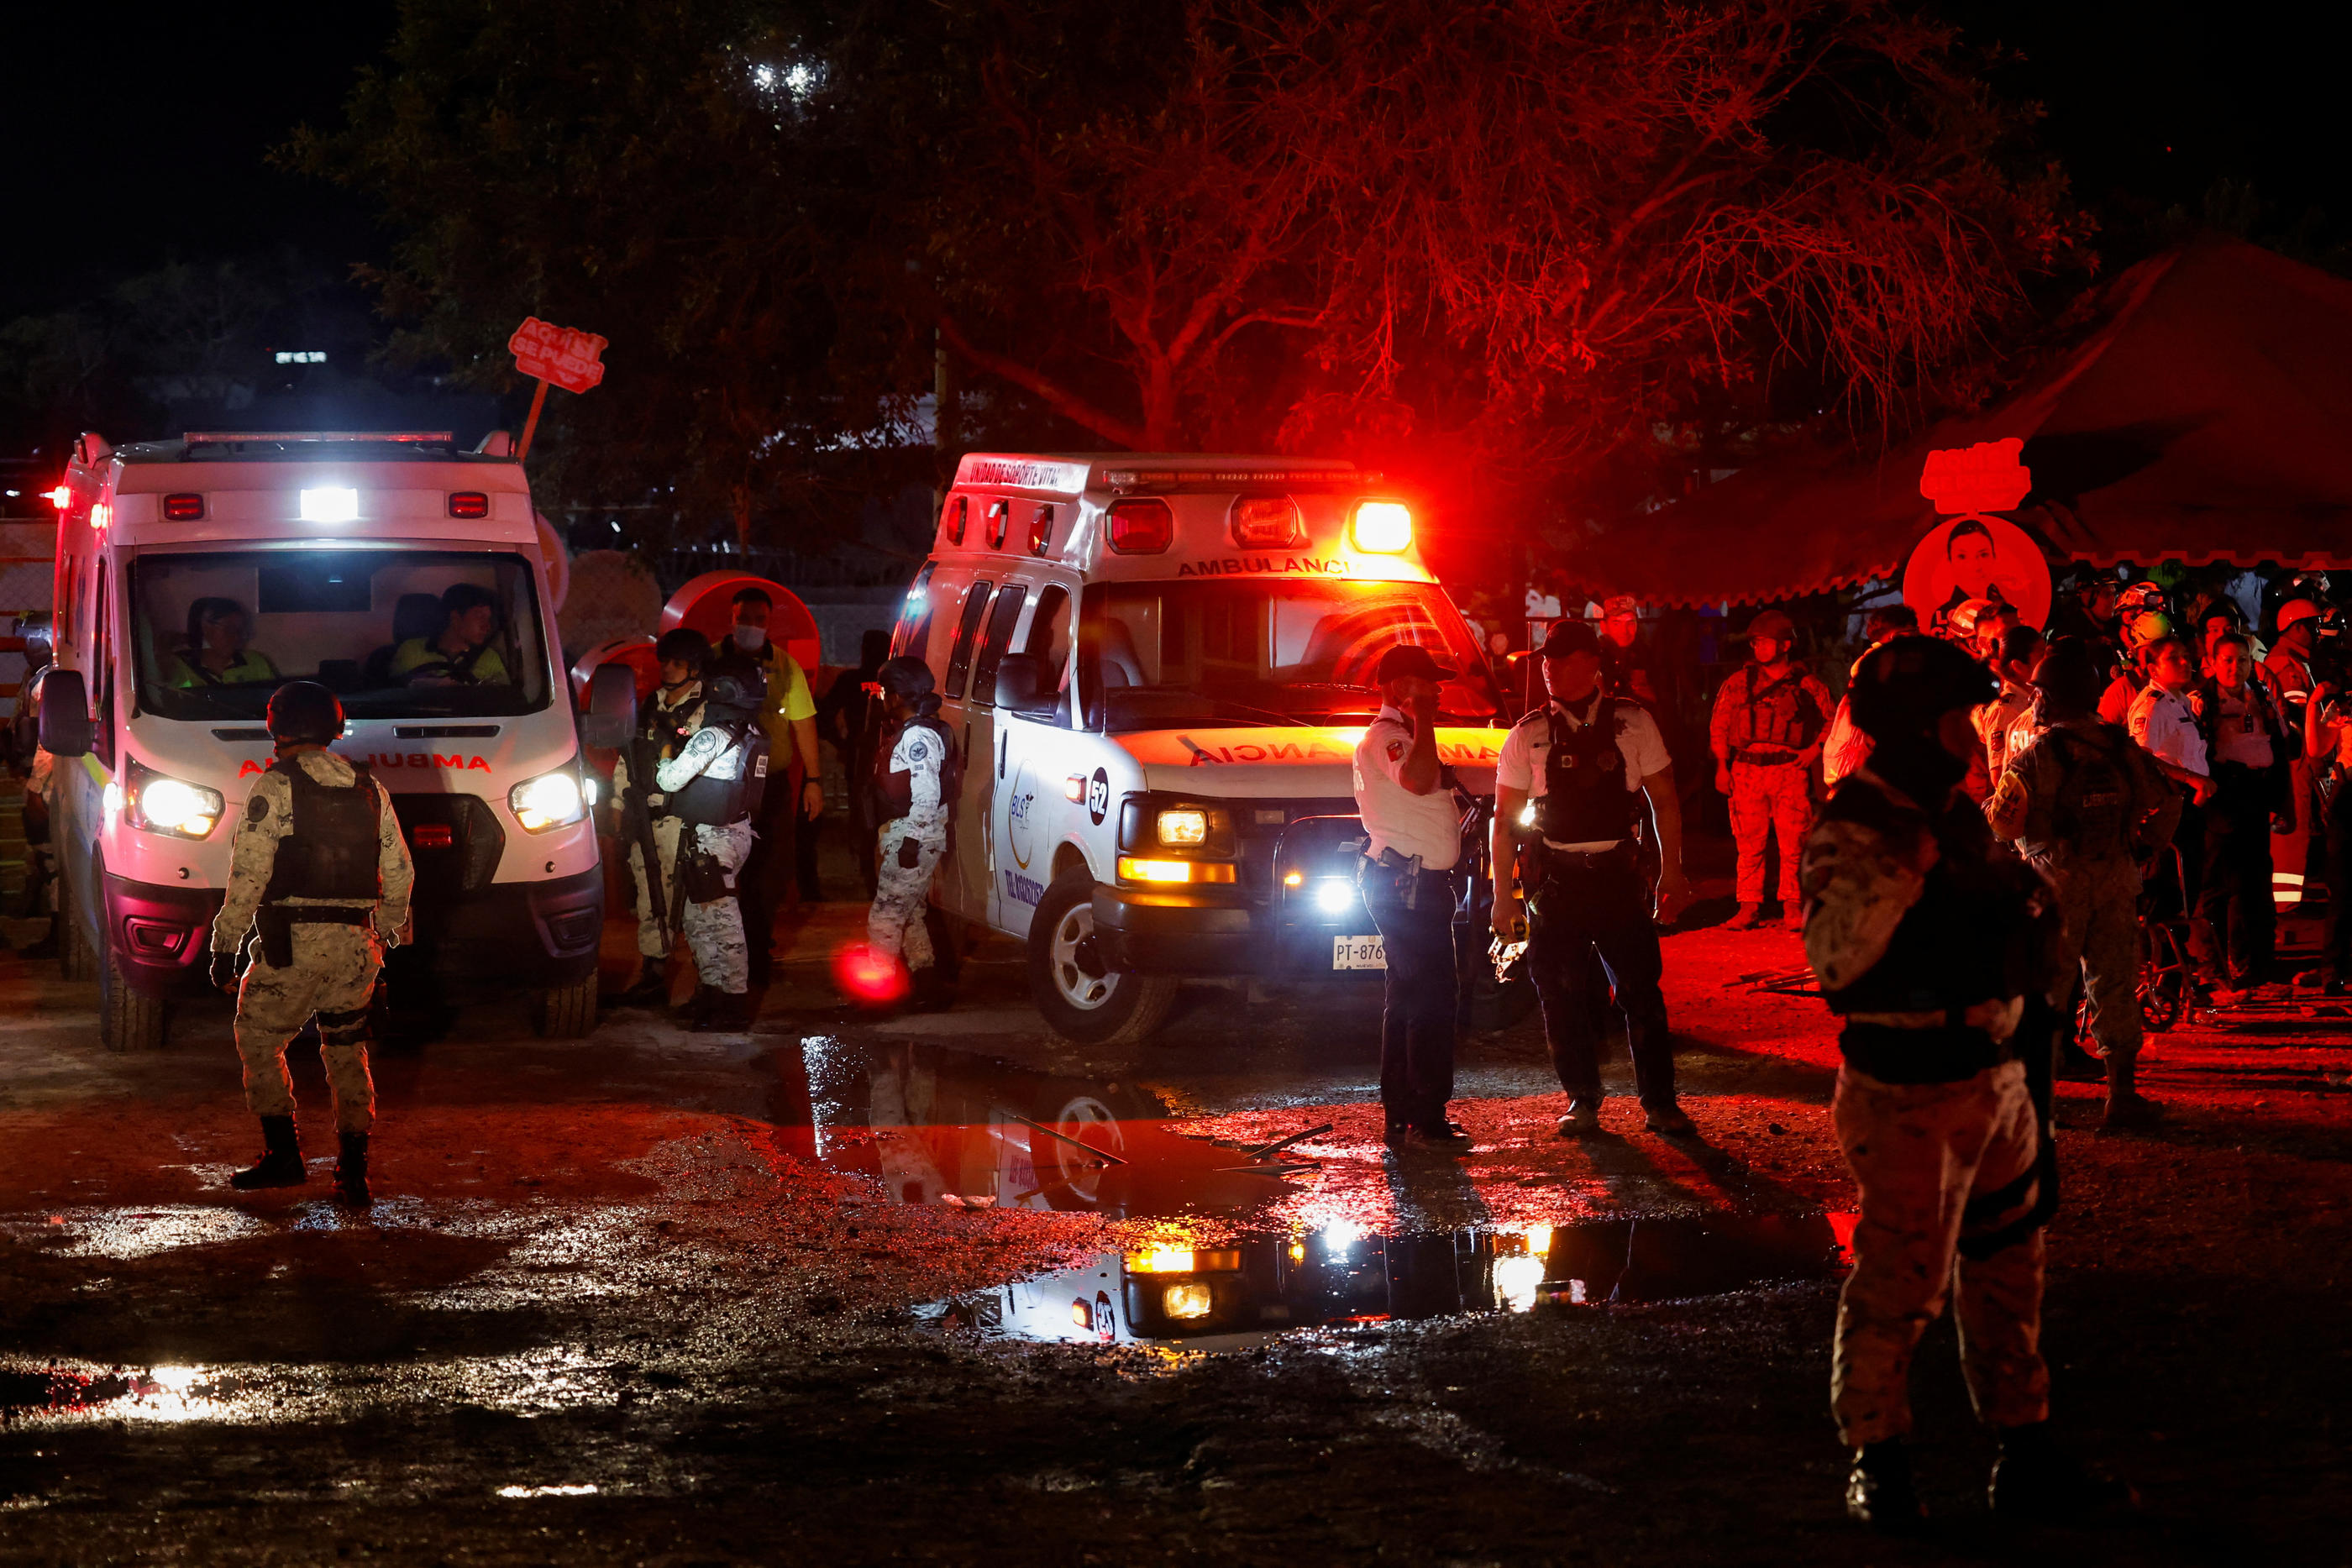 Les secours sur les lieux de l'accident, à San Pedro Garza Garcia, dans l'Etat du Nuevo Leon, au Mexique. REUTERS/Daniel Becerril